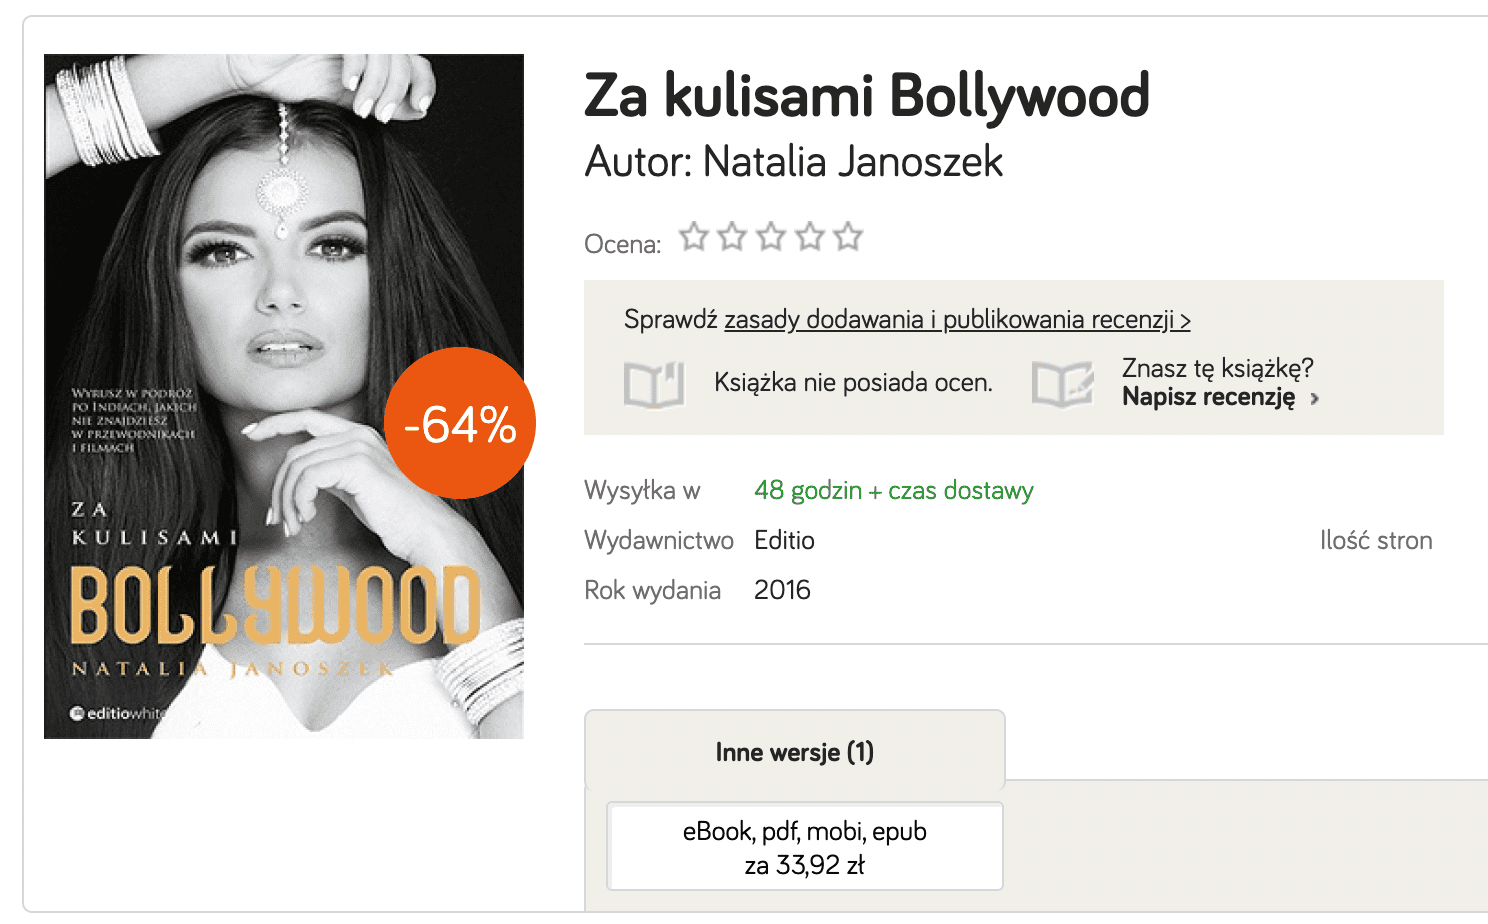 Ile kosztuje książka Natalii Janoszek po aferze ze Stanowskim?q